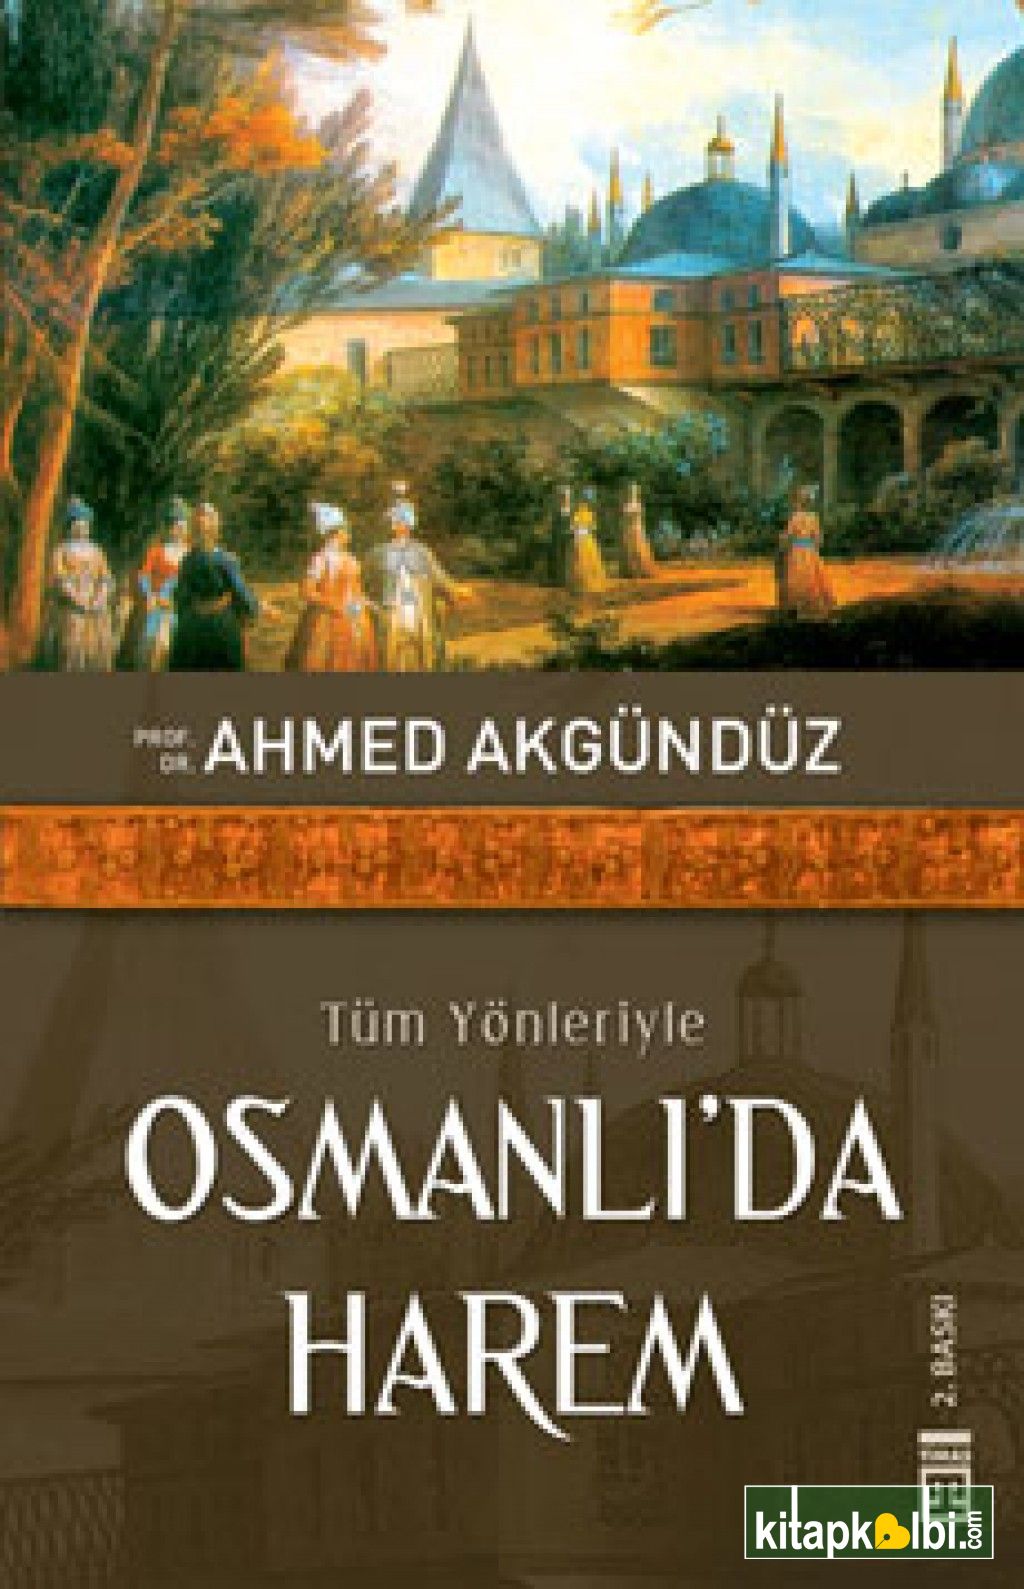 Osmanlı'da Harem